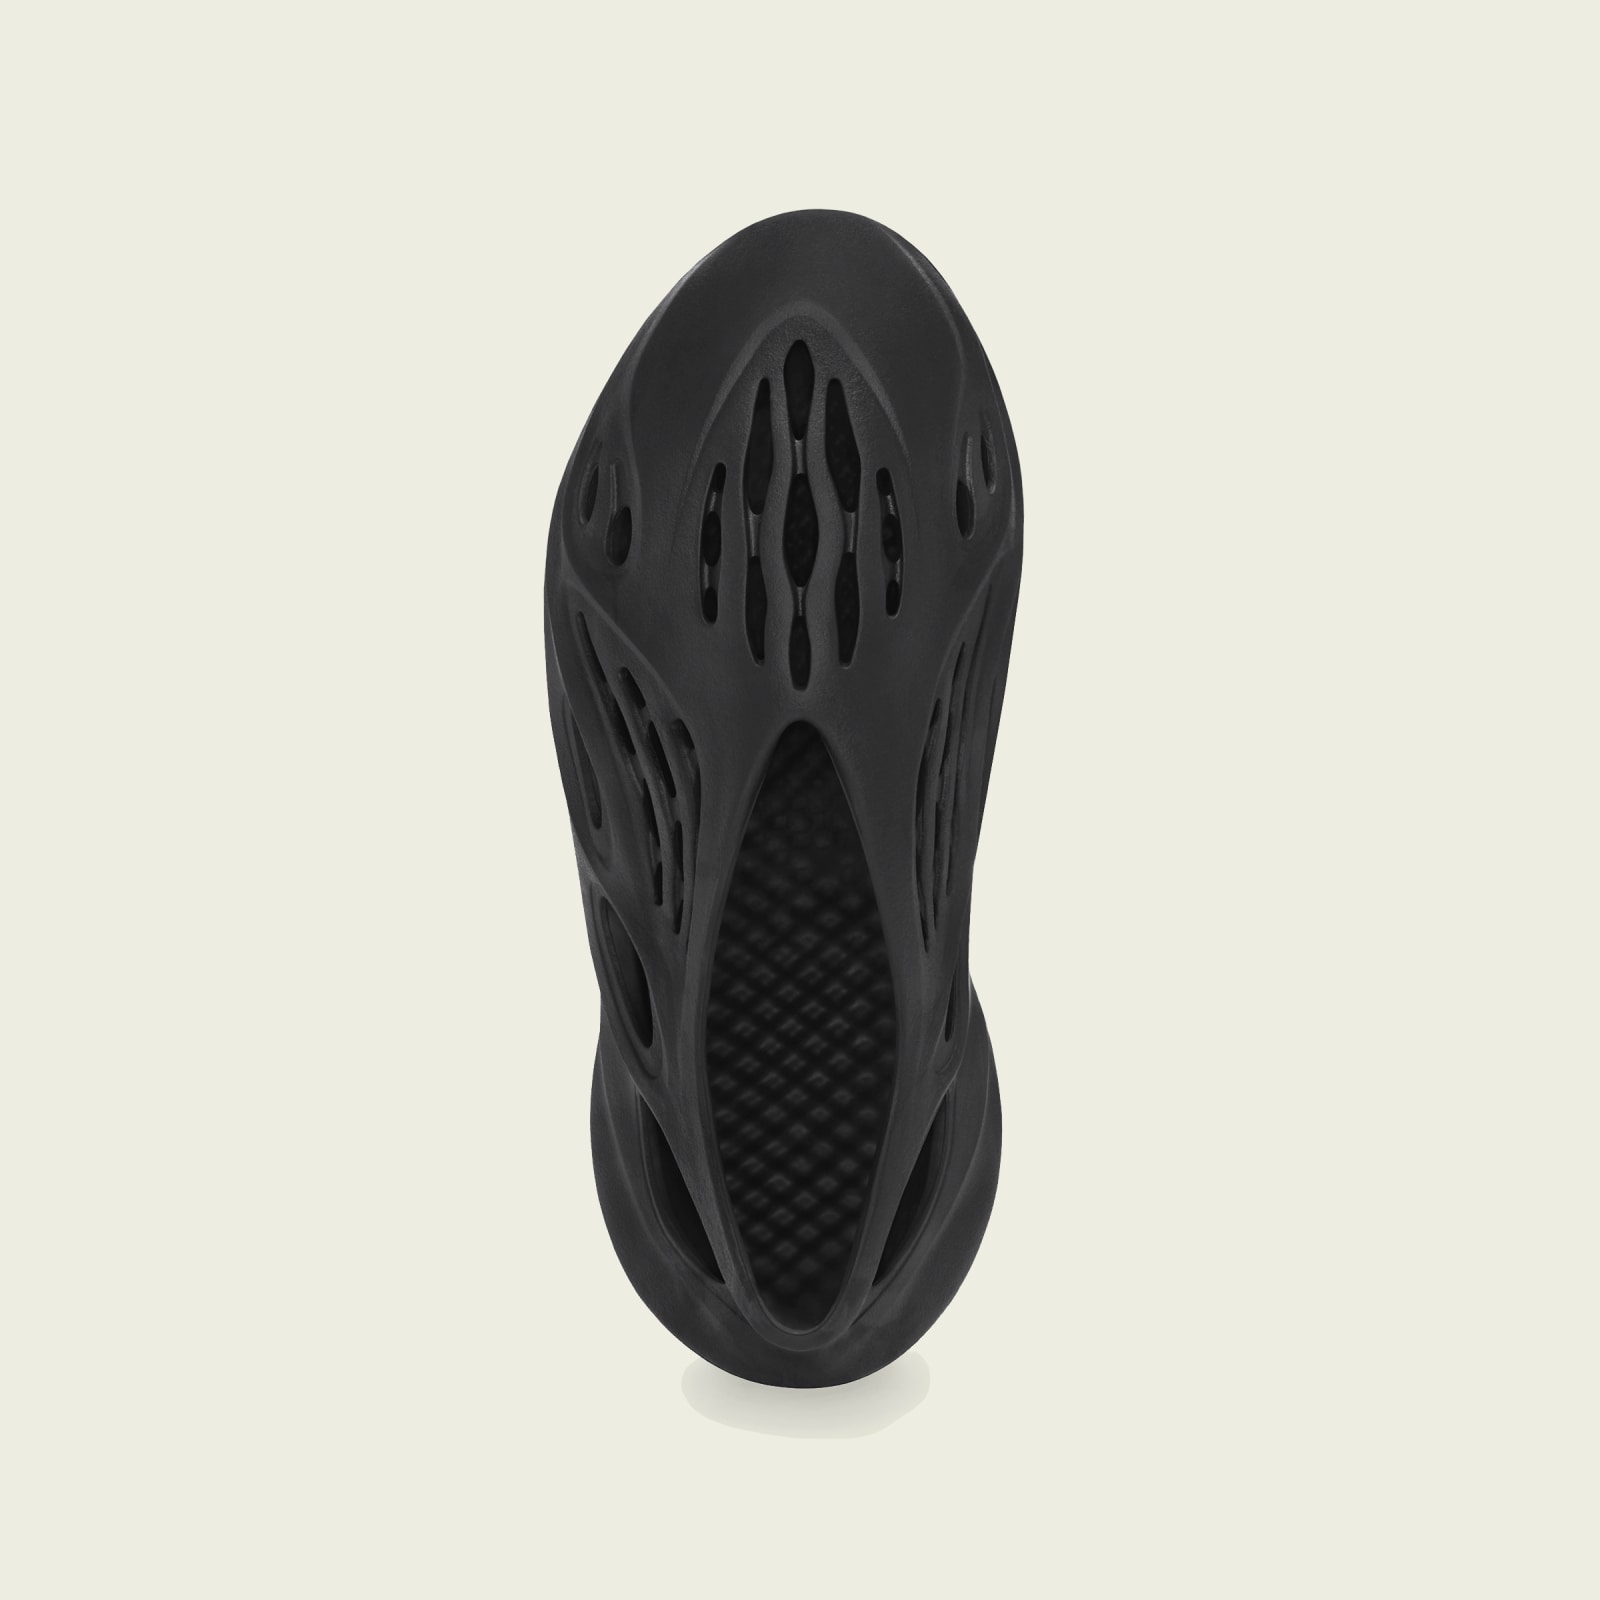 Adidas Yeezy Foam Runner
« Onyx »